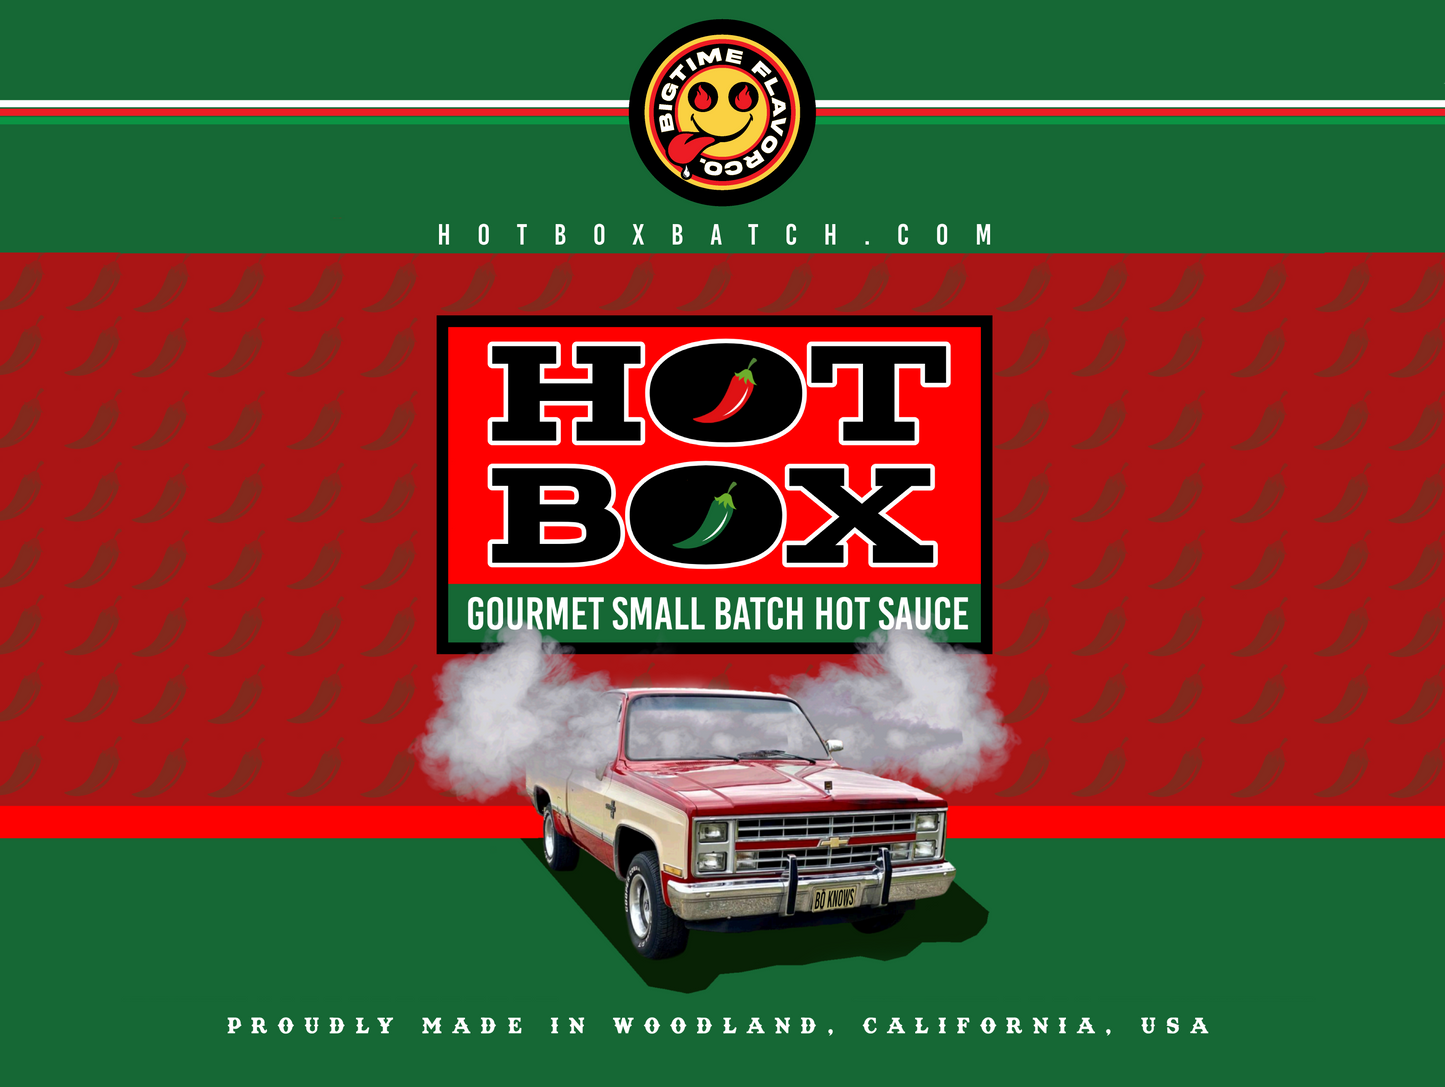 HotBox Gourmet Hot Sauce